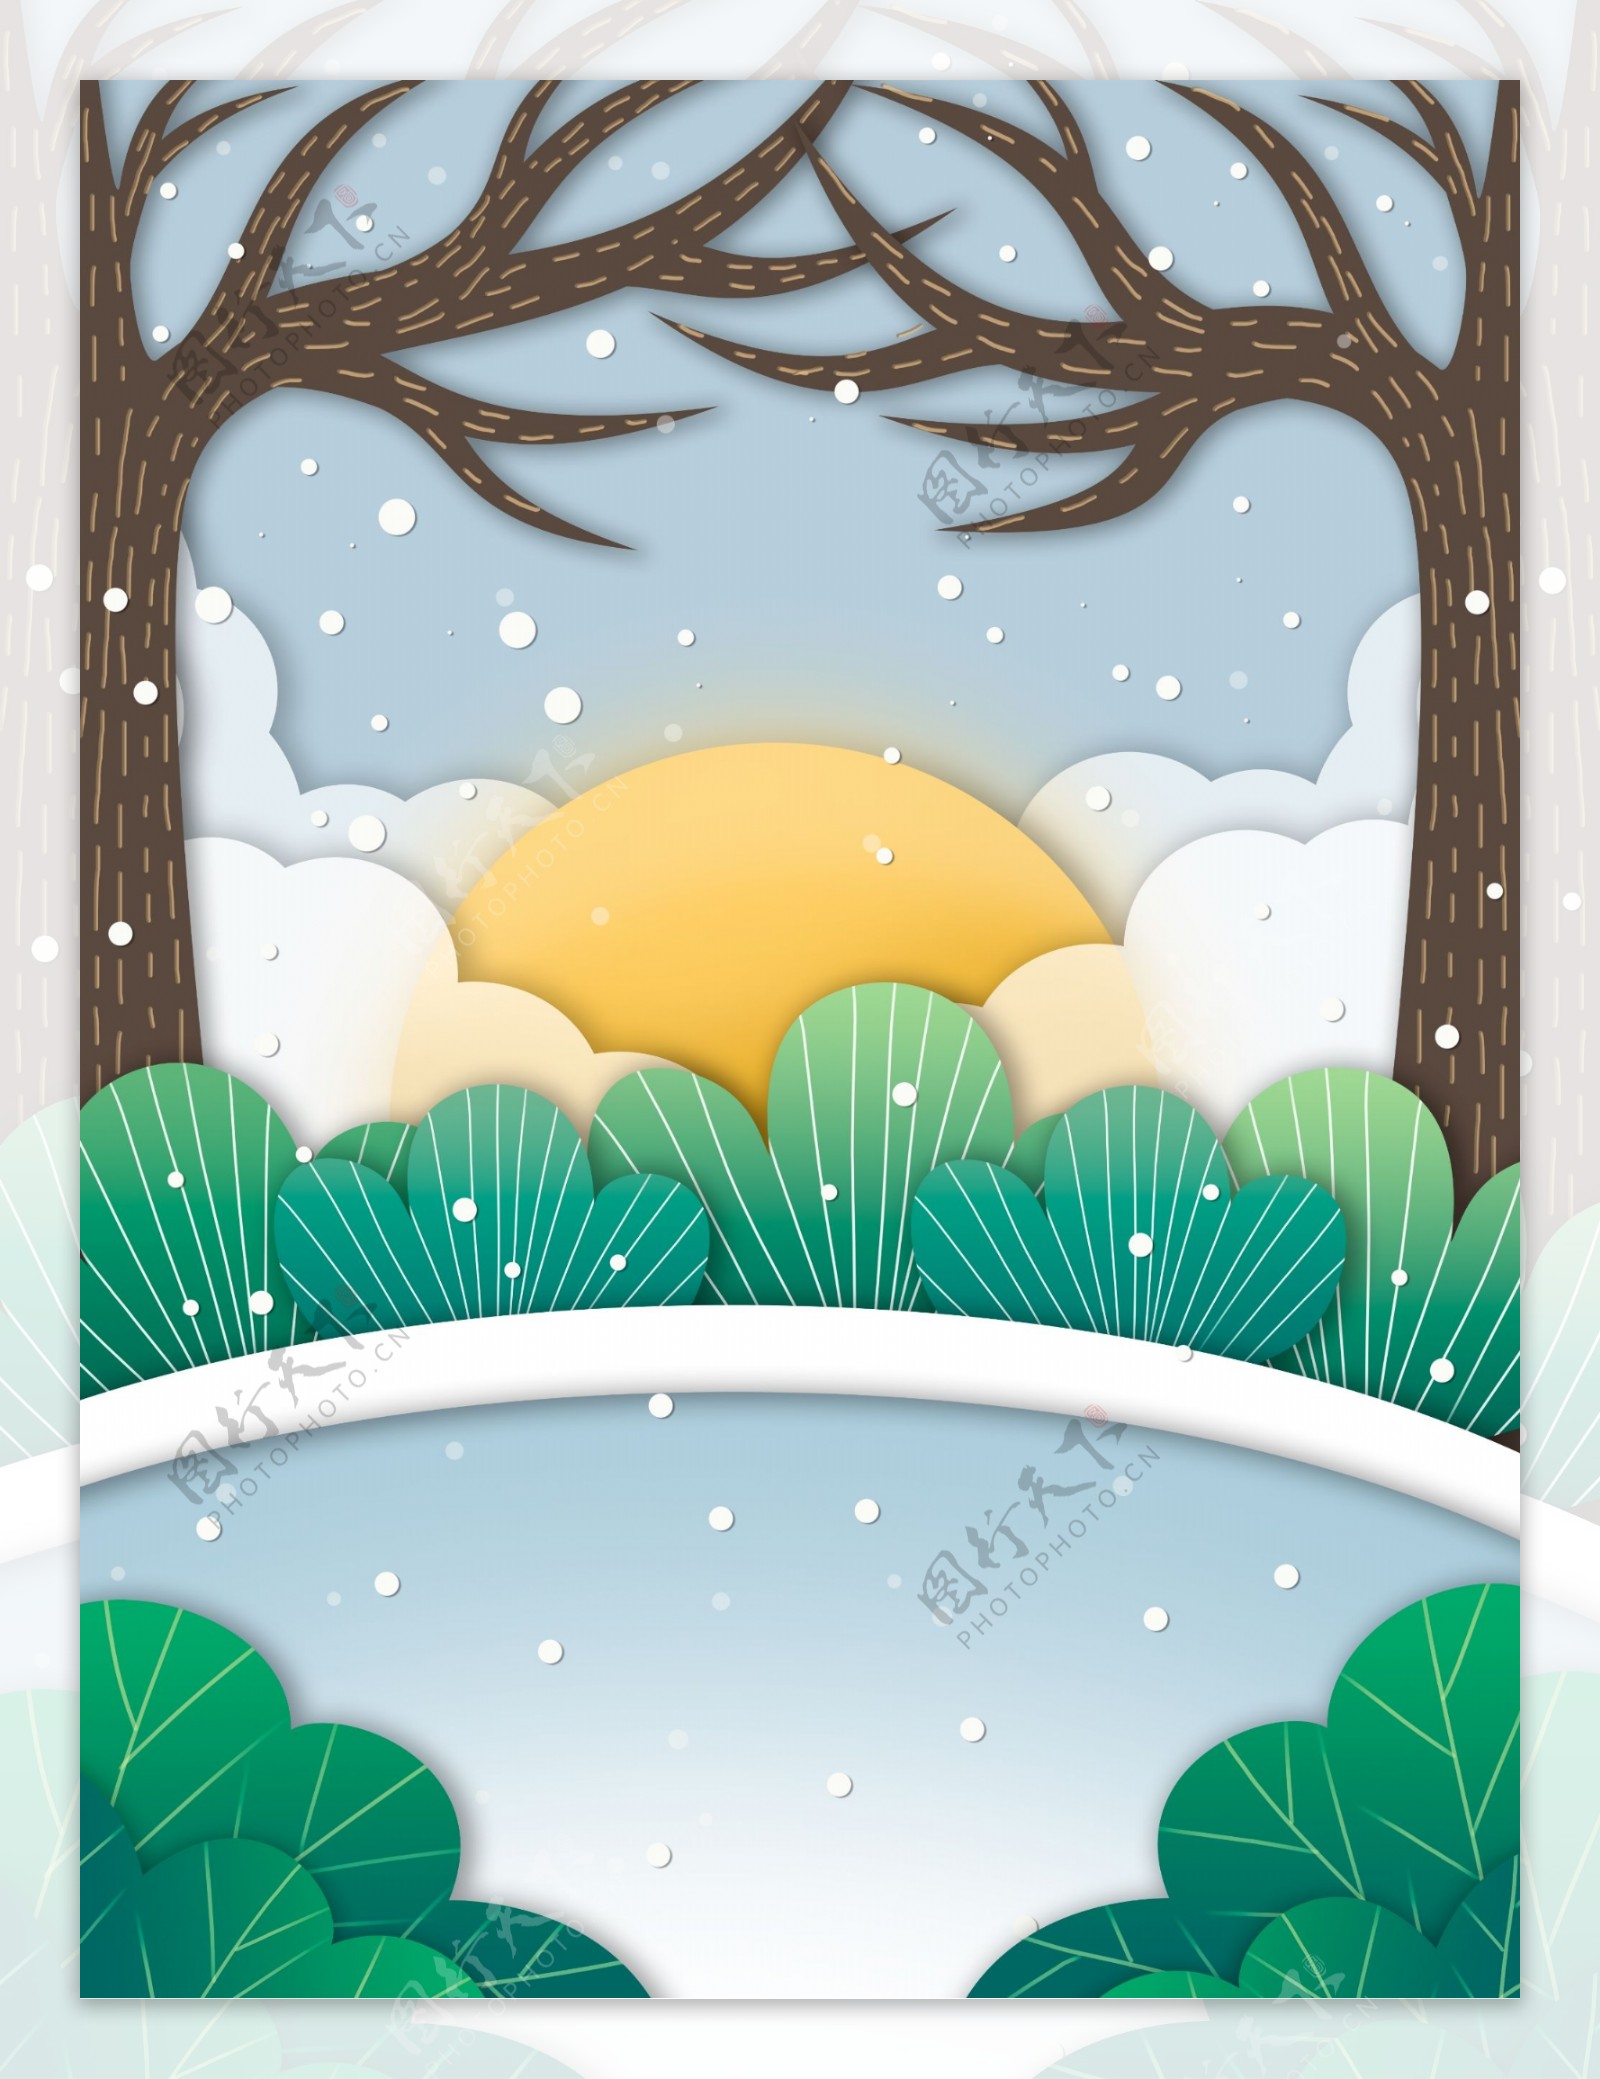 浪漫冬季下雪树林插画背景